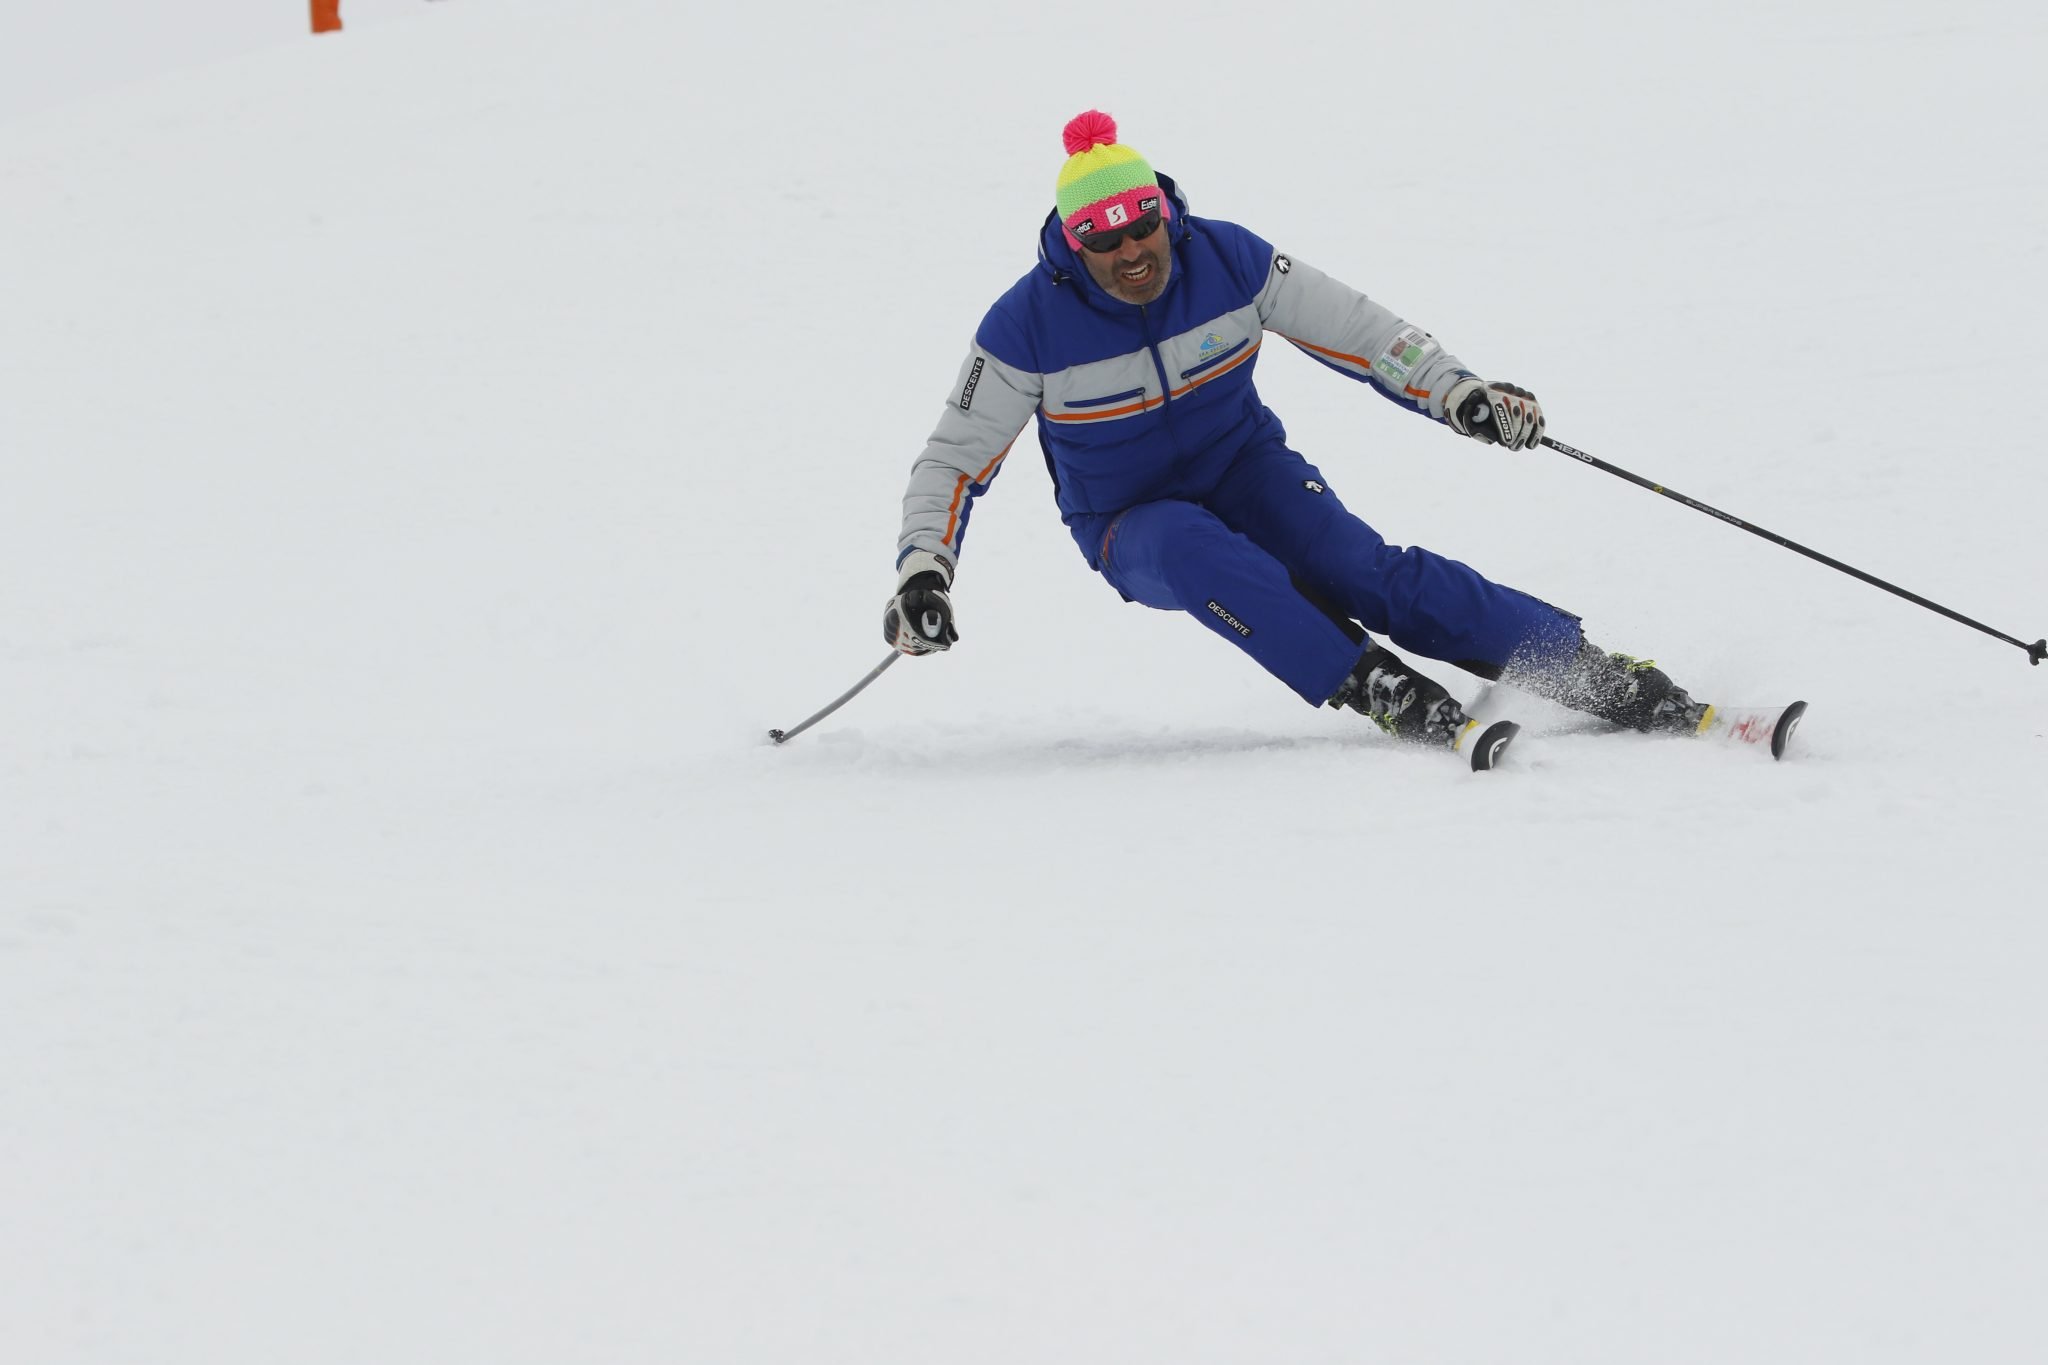 David Palobart (Clases de esquí)